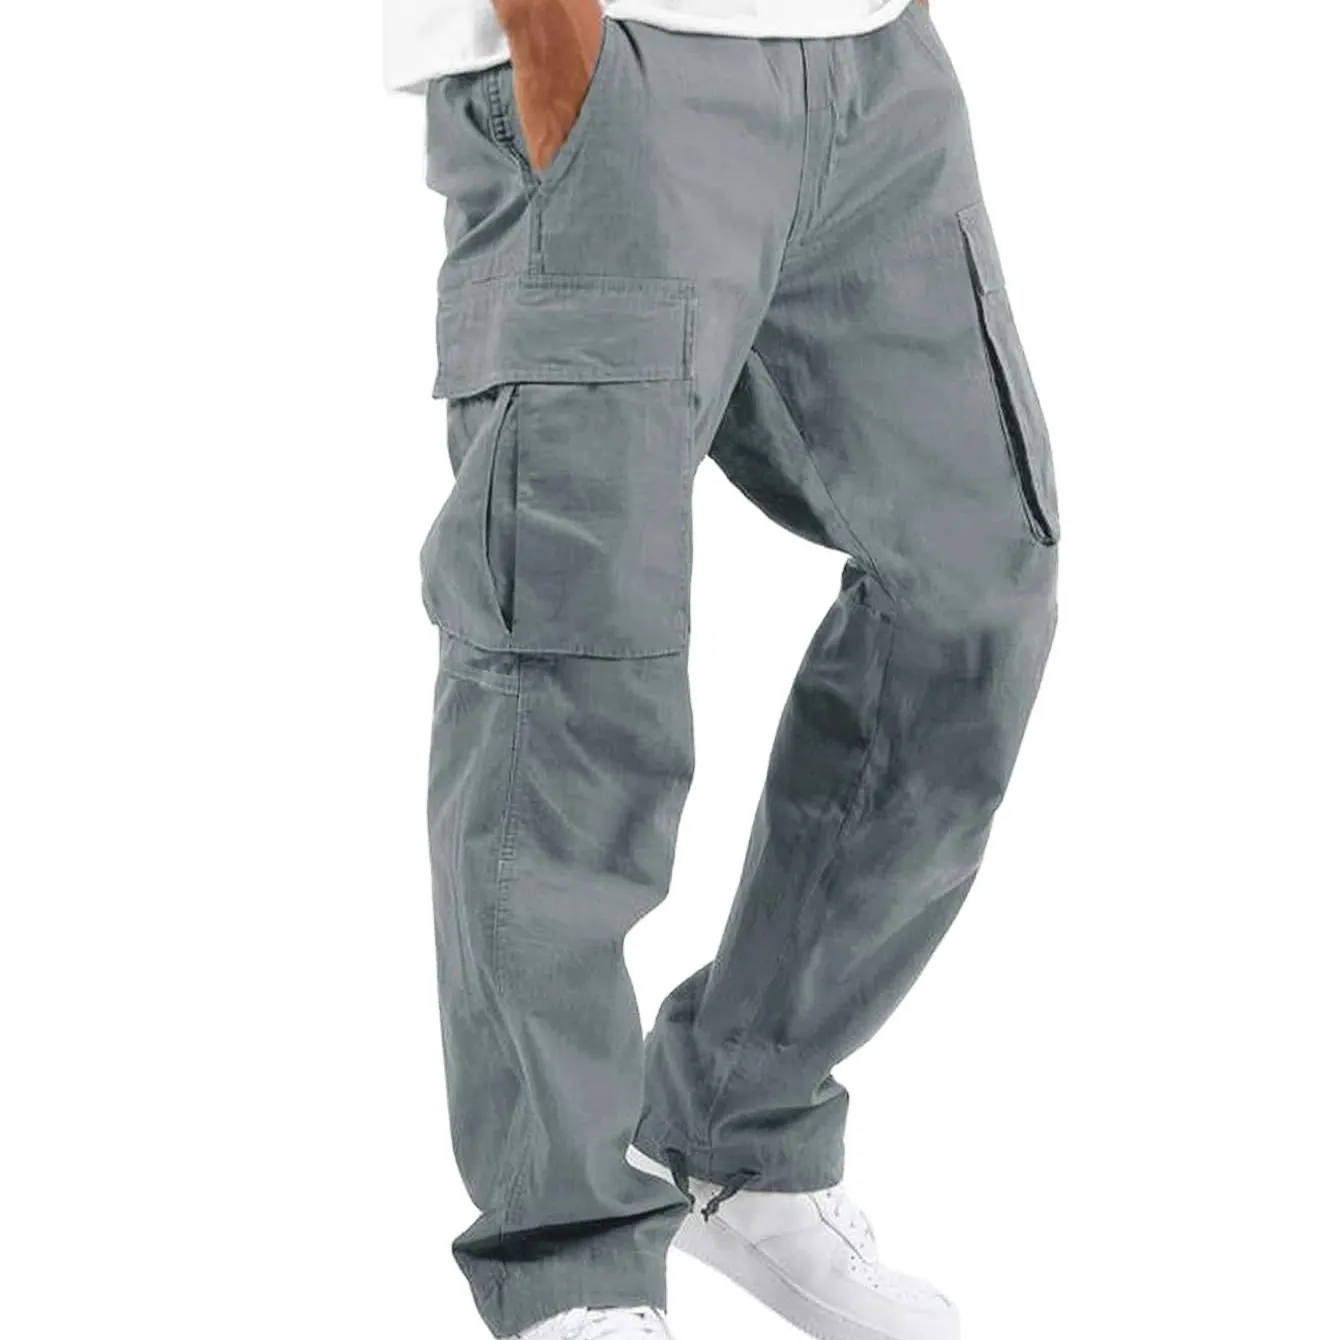 Commercio all'ingrosso OEM/ODM Logo personalizzato moda di alta qualità tasche laterali Unisex pantaloni Cargo dritti larghi